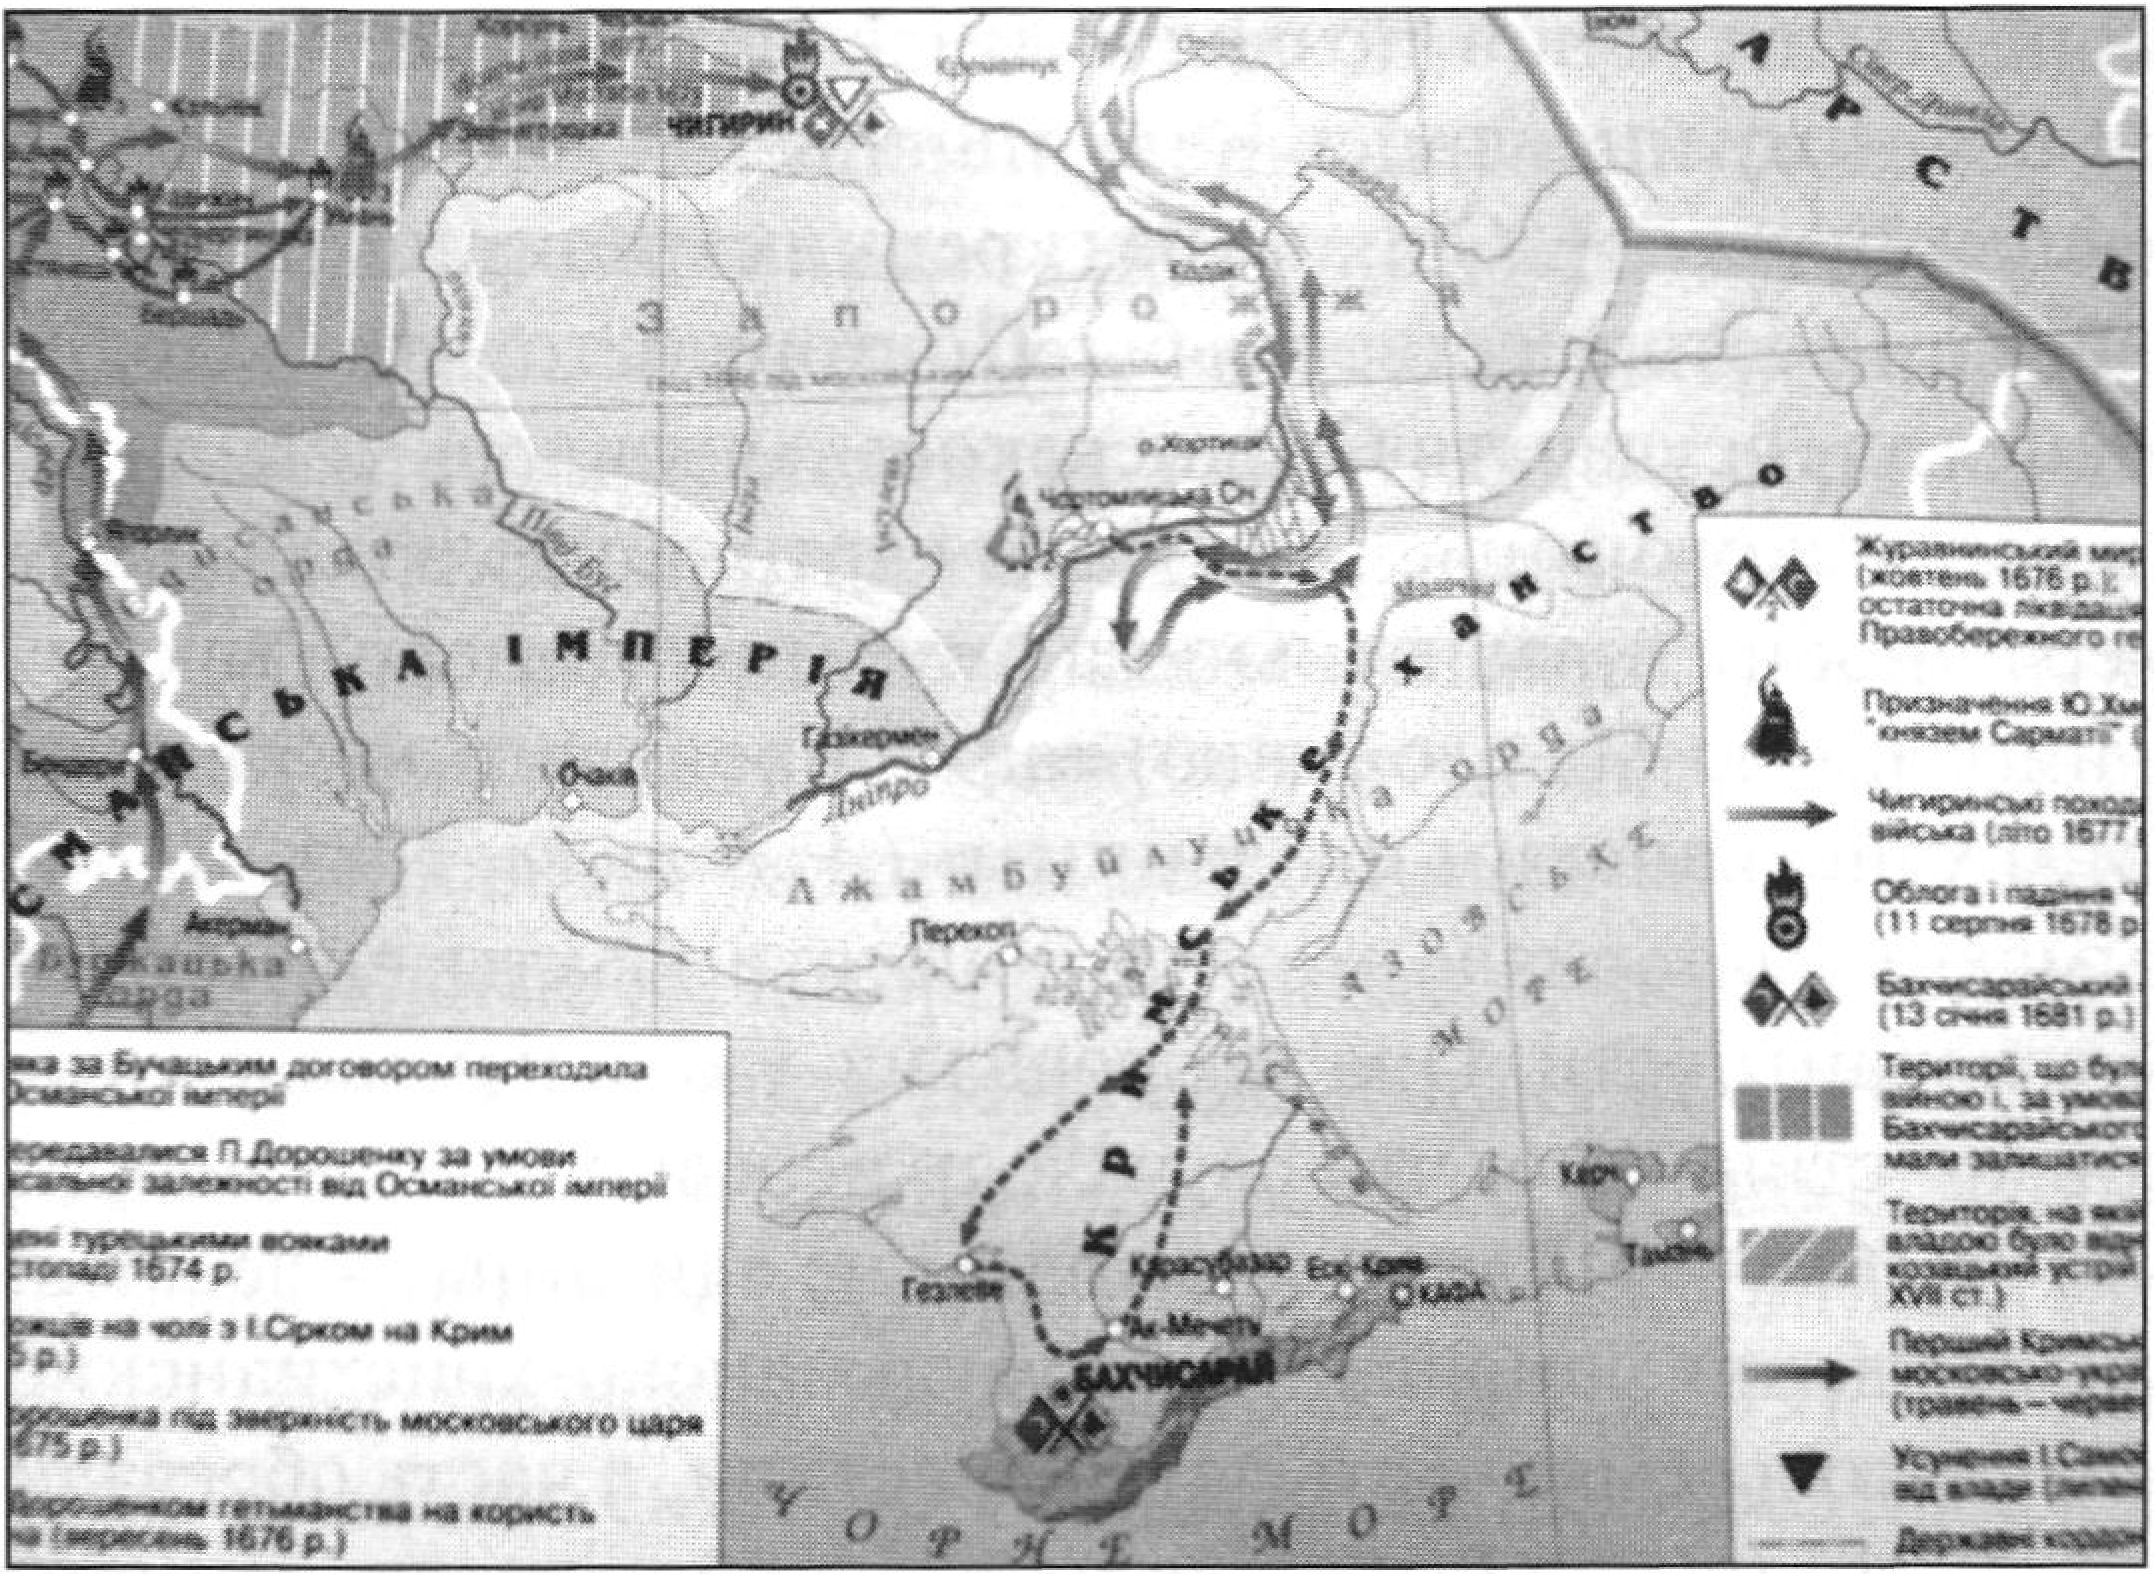 Поход И. Серка в Крым в 1675 г. Карта из: Къасевет, 2010, № 37